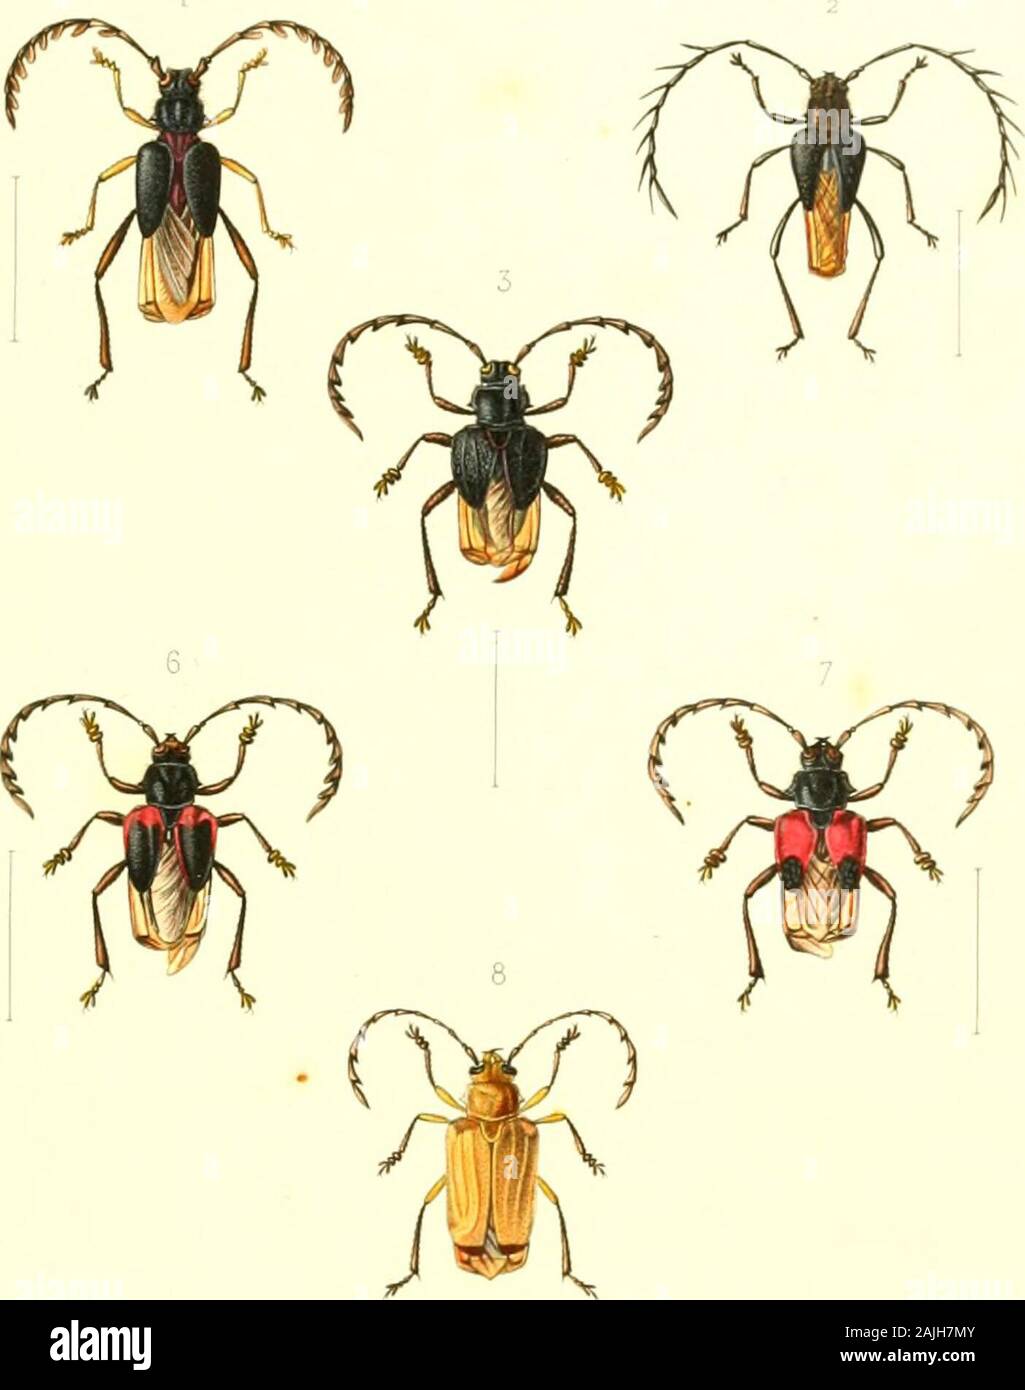 Archives entomologiques, ou, Recueil contenant des illustrations d'insectes nouveaux ou rares . 1 Myzomorptus Scatellalus è s^.t,n^^u 5 My^omorphiLS i-io^* 9 ? 2. li. id. 5 6 ? ii. li 9 - ? 3 id 4^0^^^S ^ fwirur.Srrjd 7- id id. 9 id /- 4 id. id. 4 /i^ i 8 id. td 9 &gt;?,/? .-«• 1 ^UT^JUl ARC n IVES ENTOMOLO GIQ LIES. PL. m. Stock Photo